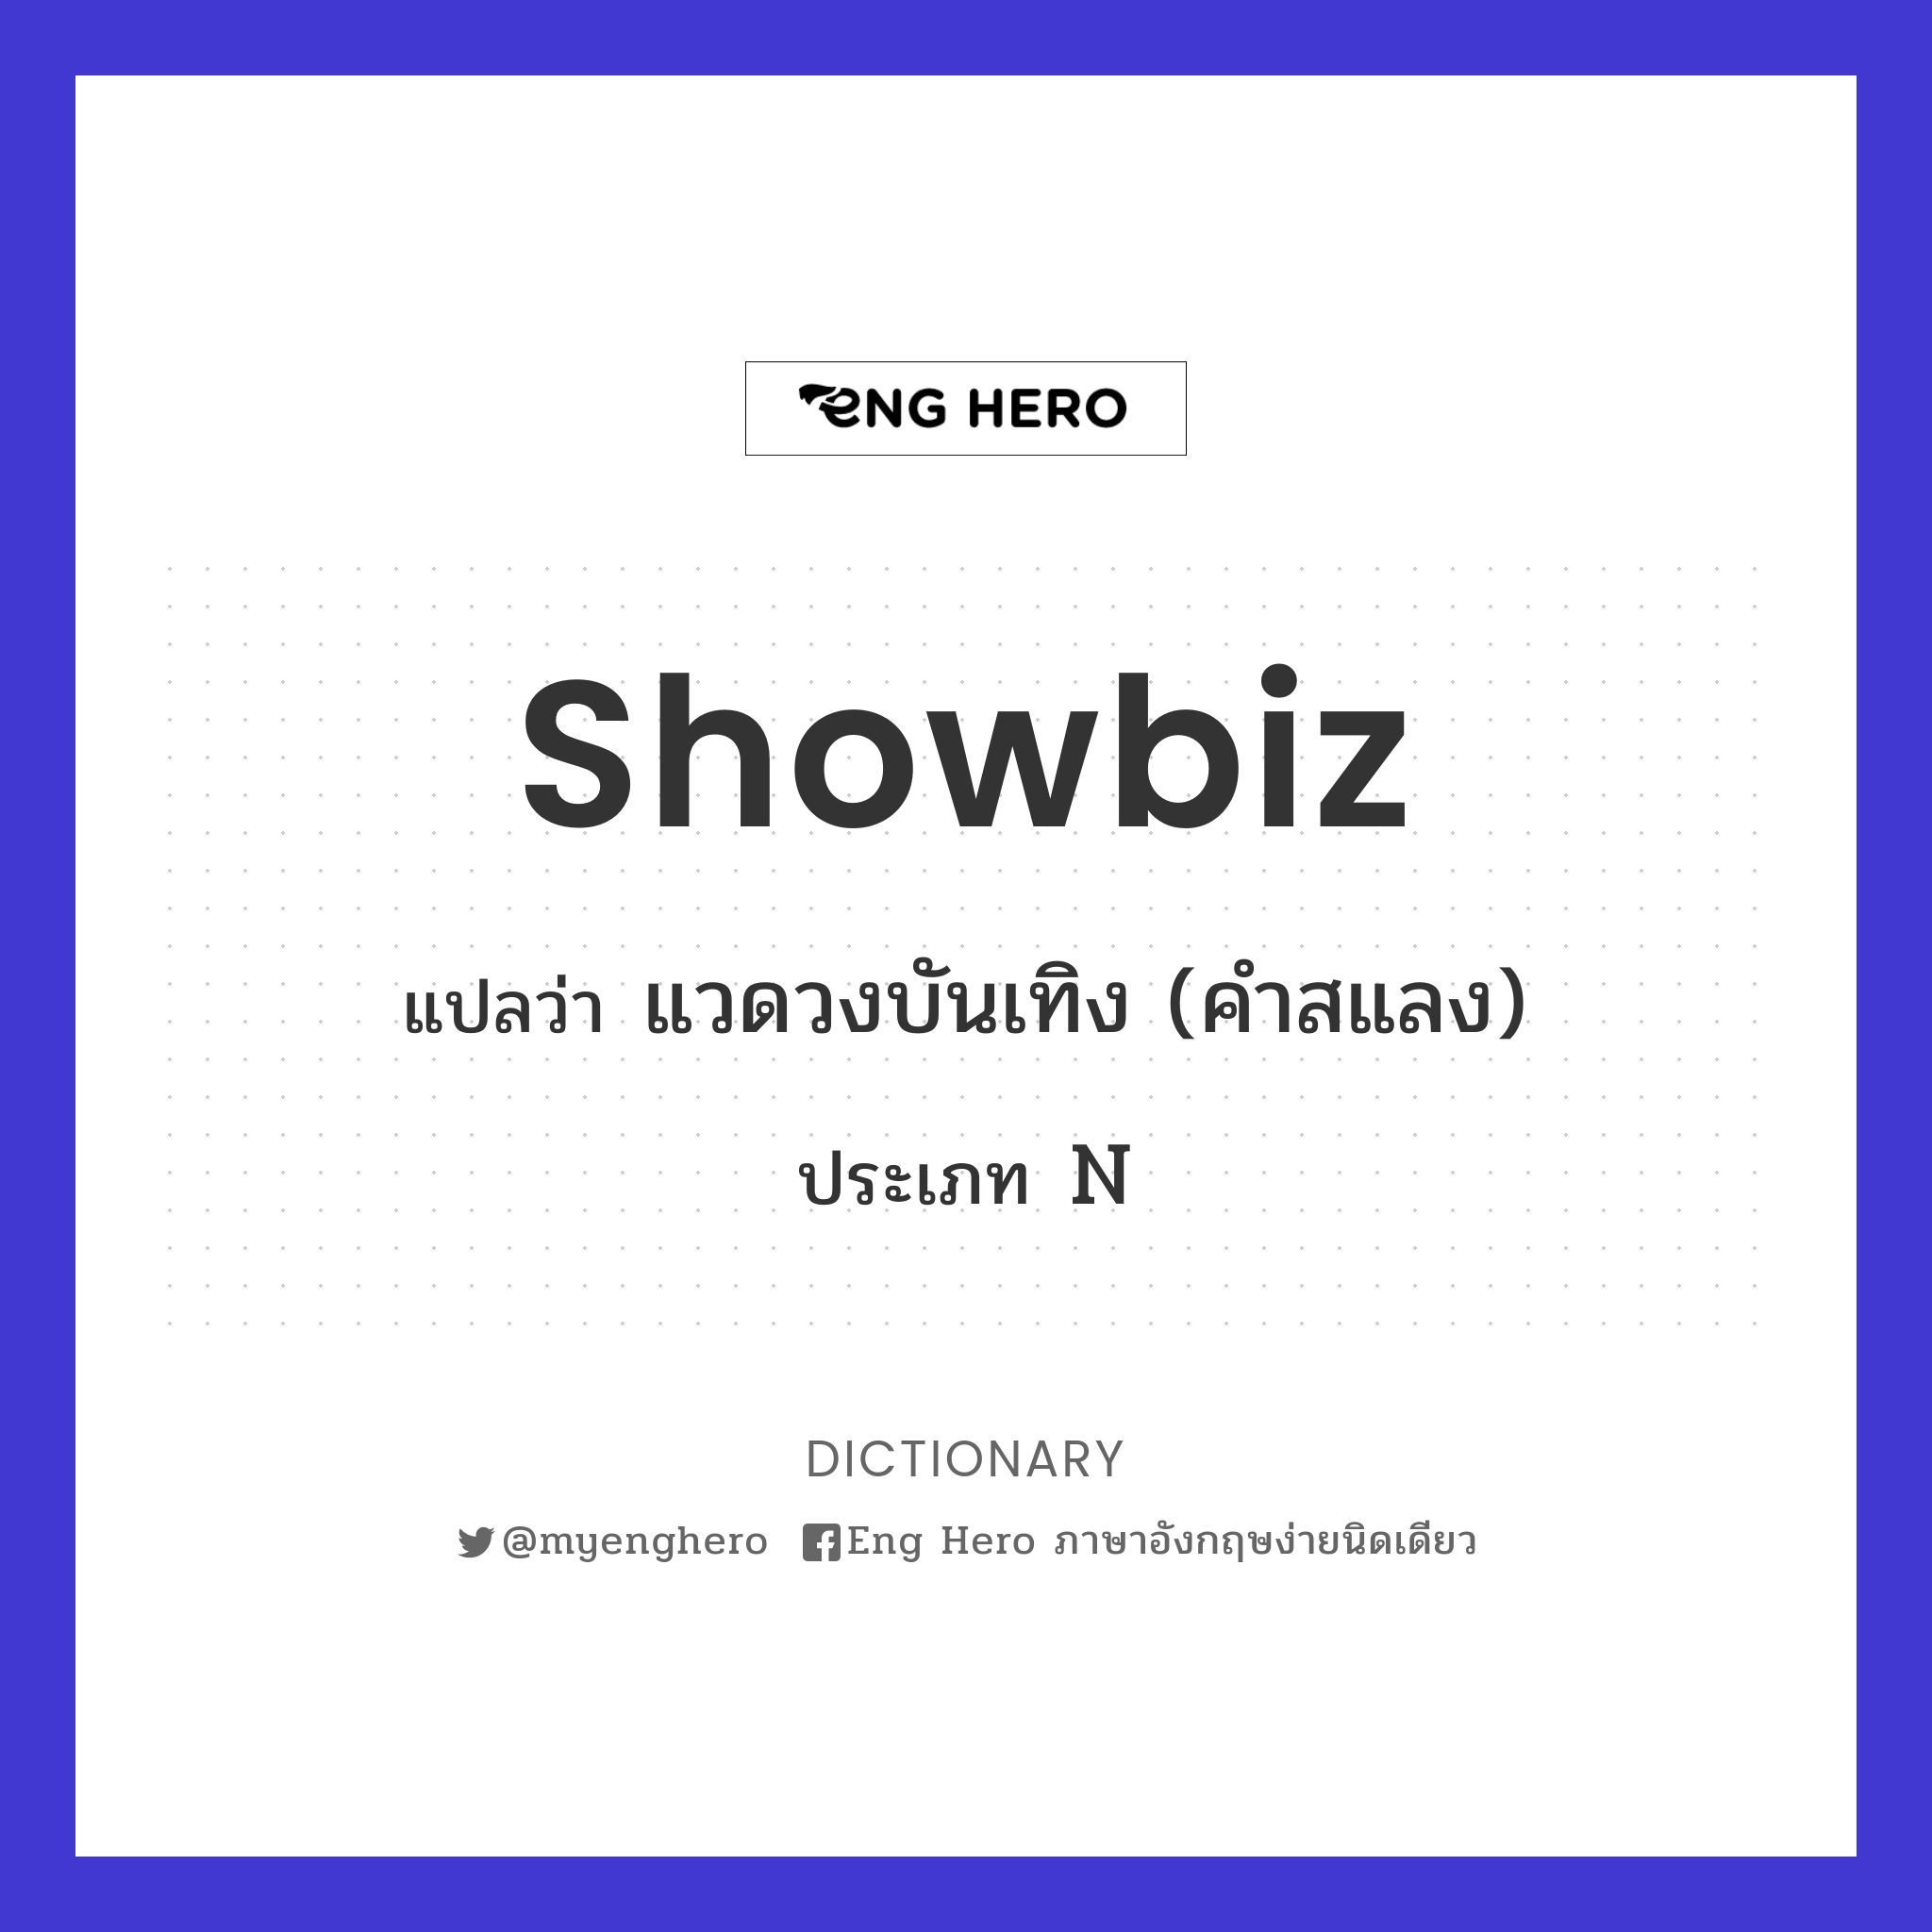 showbiz